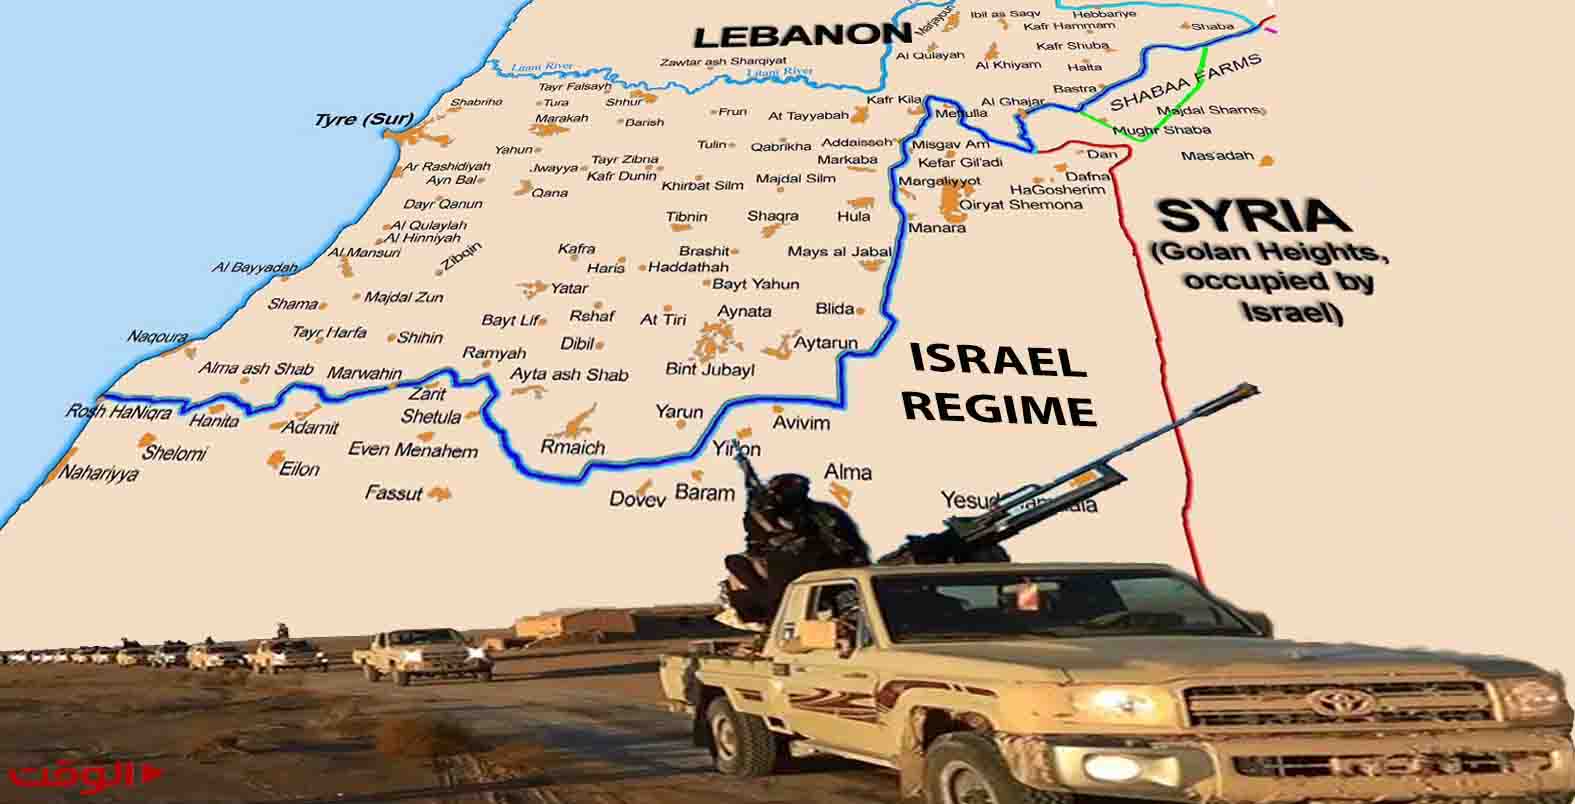 حزب الله وجبهة شرقیة جدیدة .. اسرائیل للنصرة وداعش شکرا جزیلا  ..